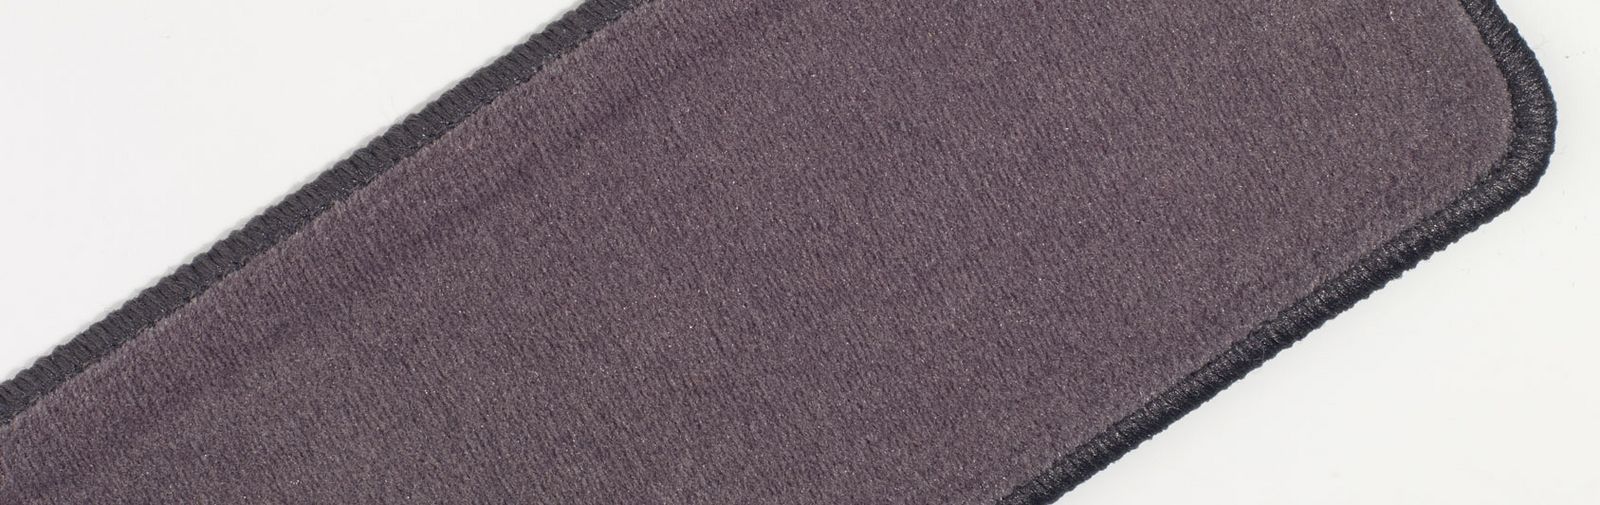 poduszki na klęczniki  tkanina welurowa uni kod koloru 682 kolor ciemnoszary